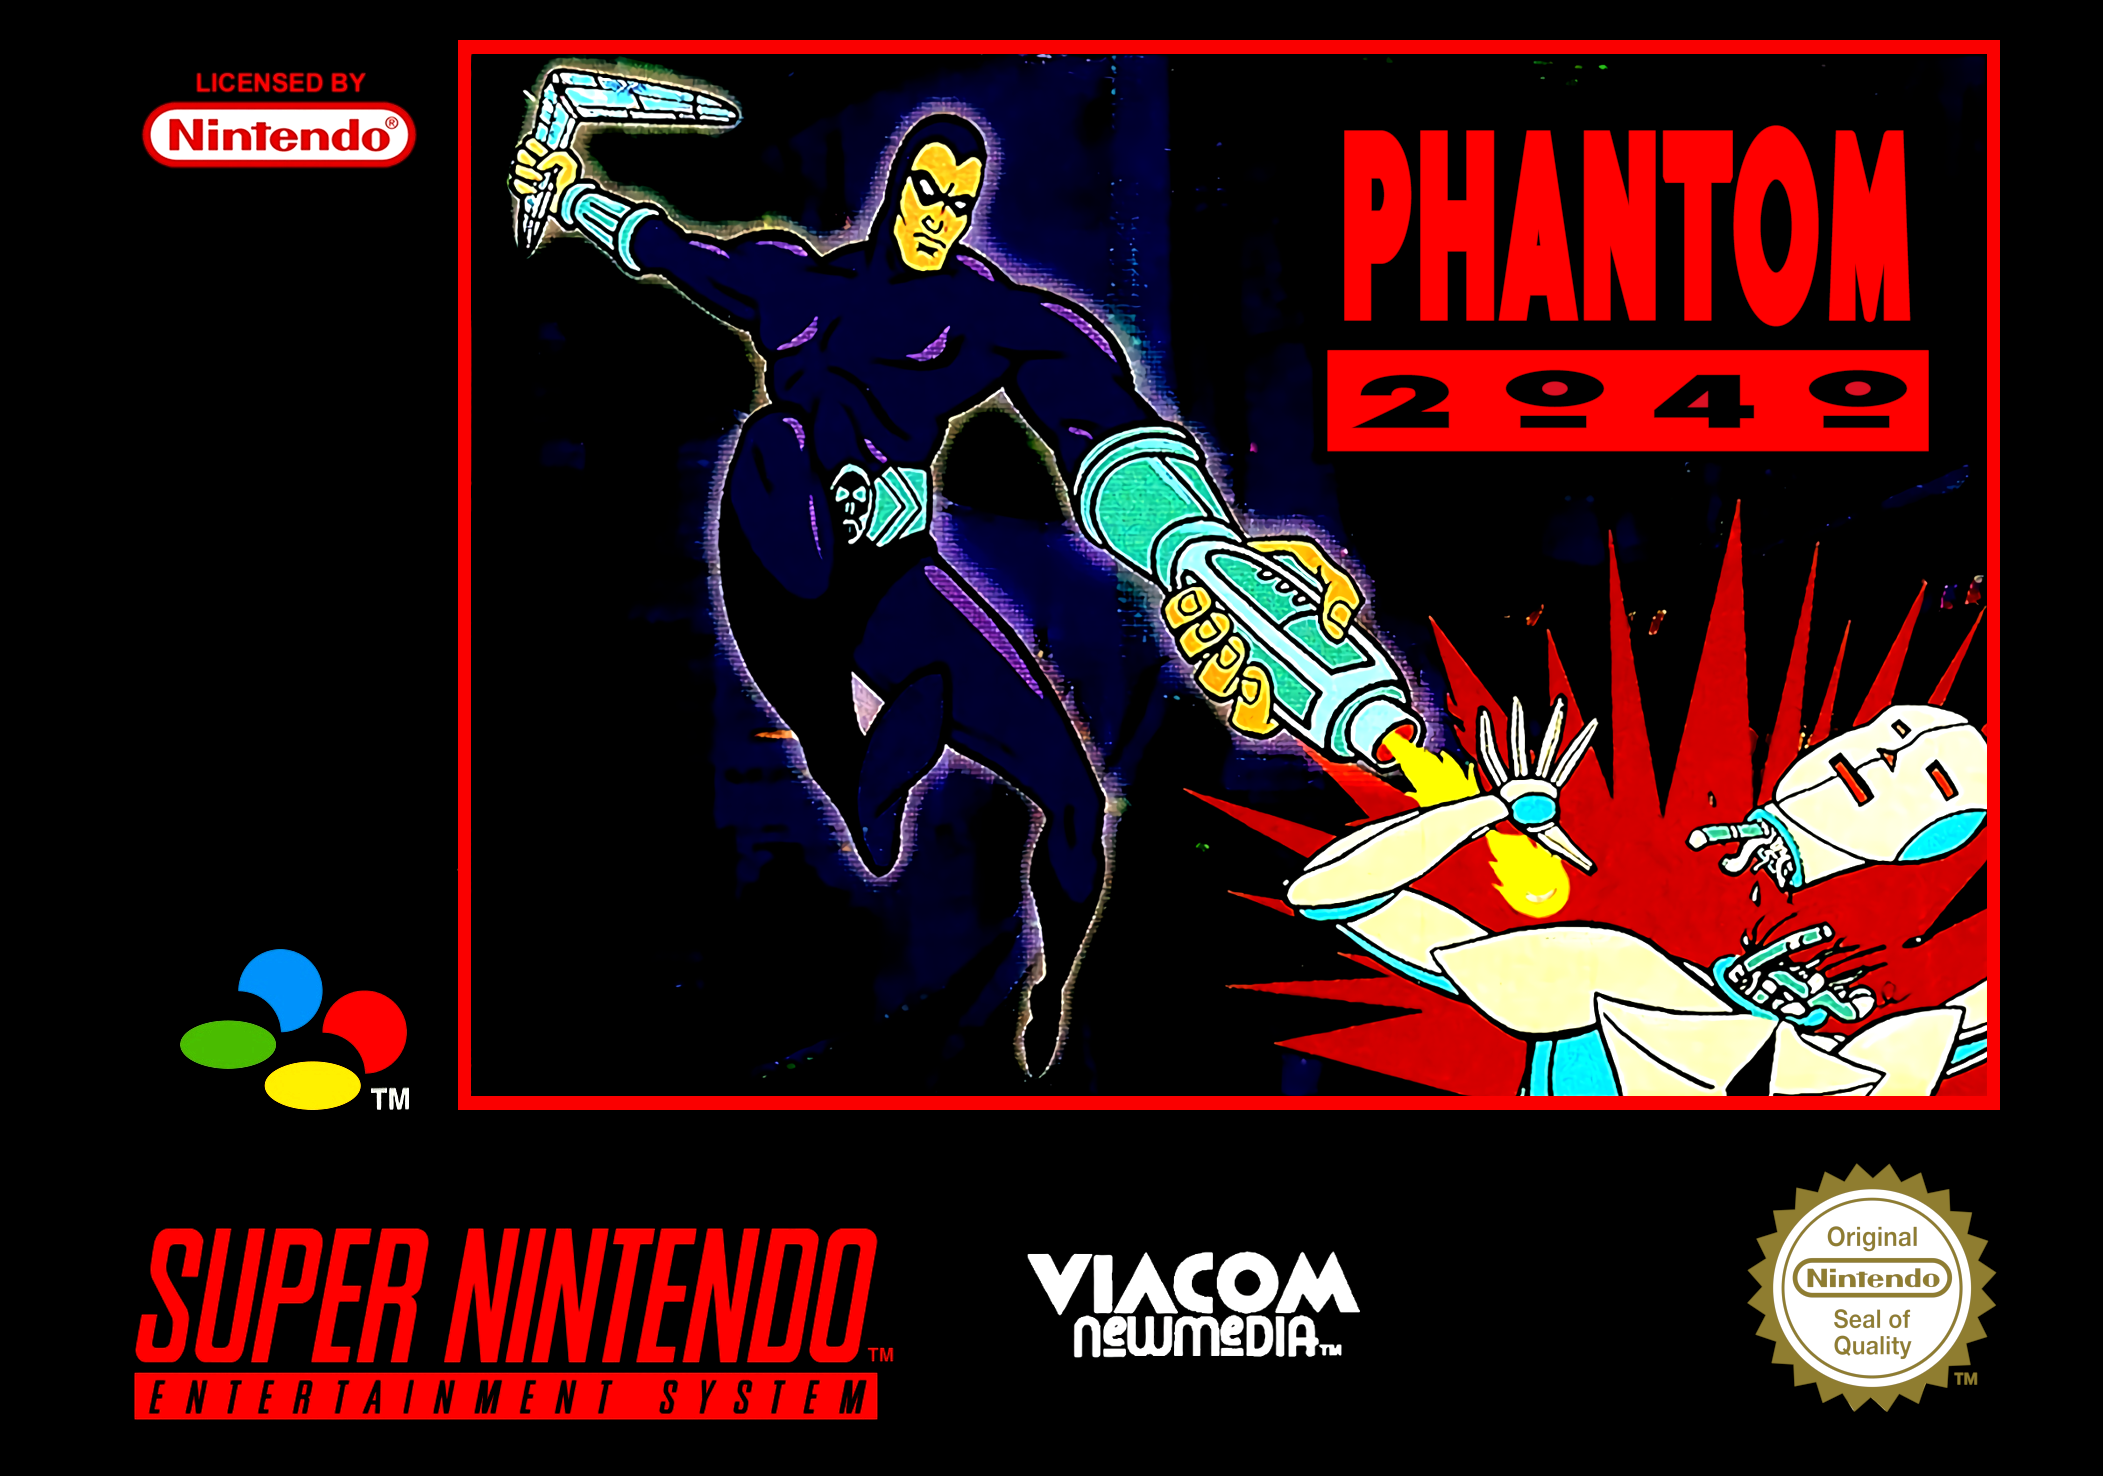 Game | Super Nintendo SNES | Phantom 2040